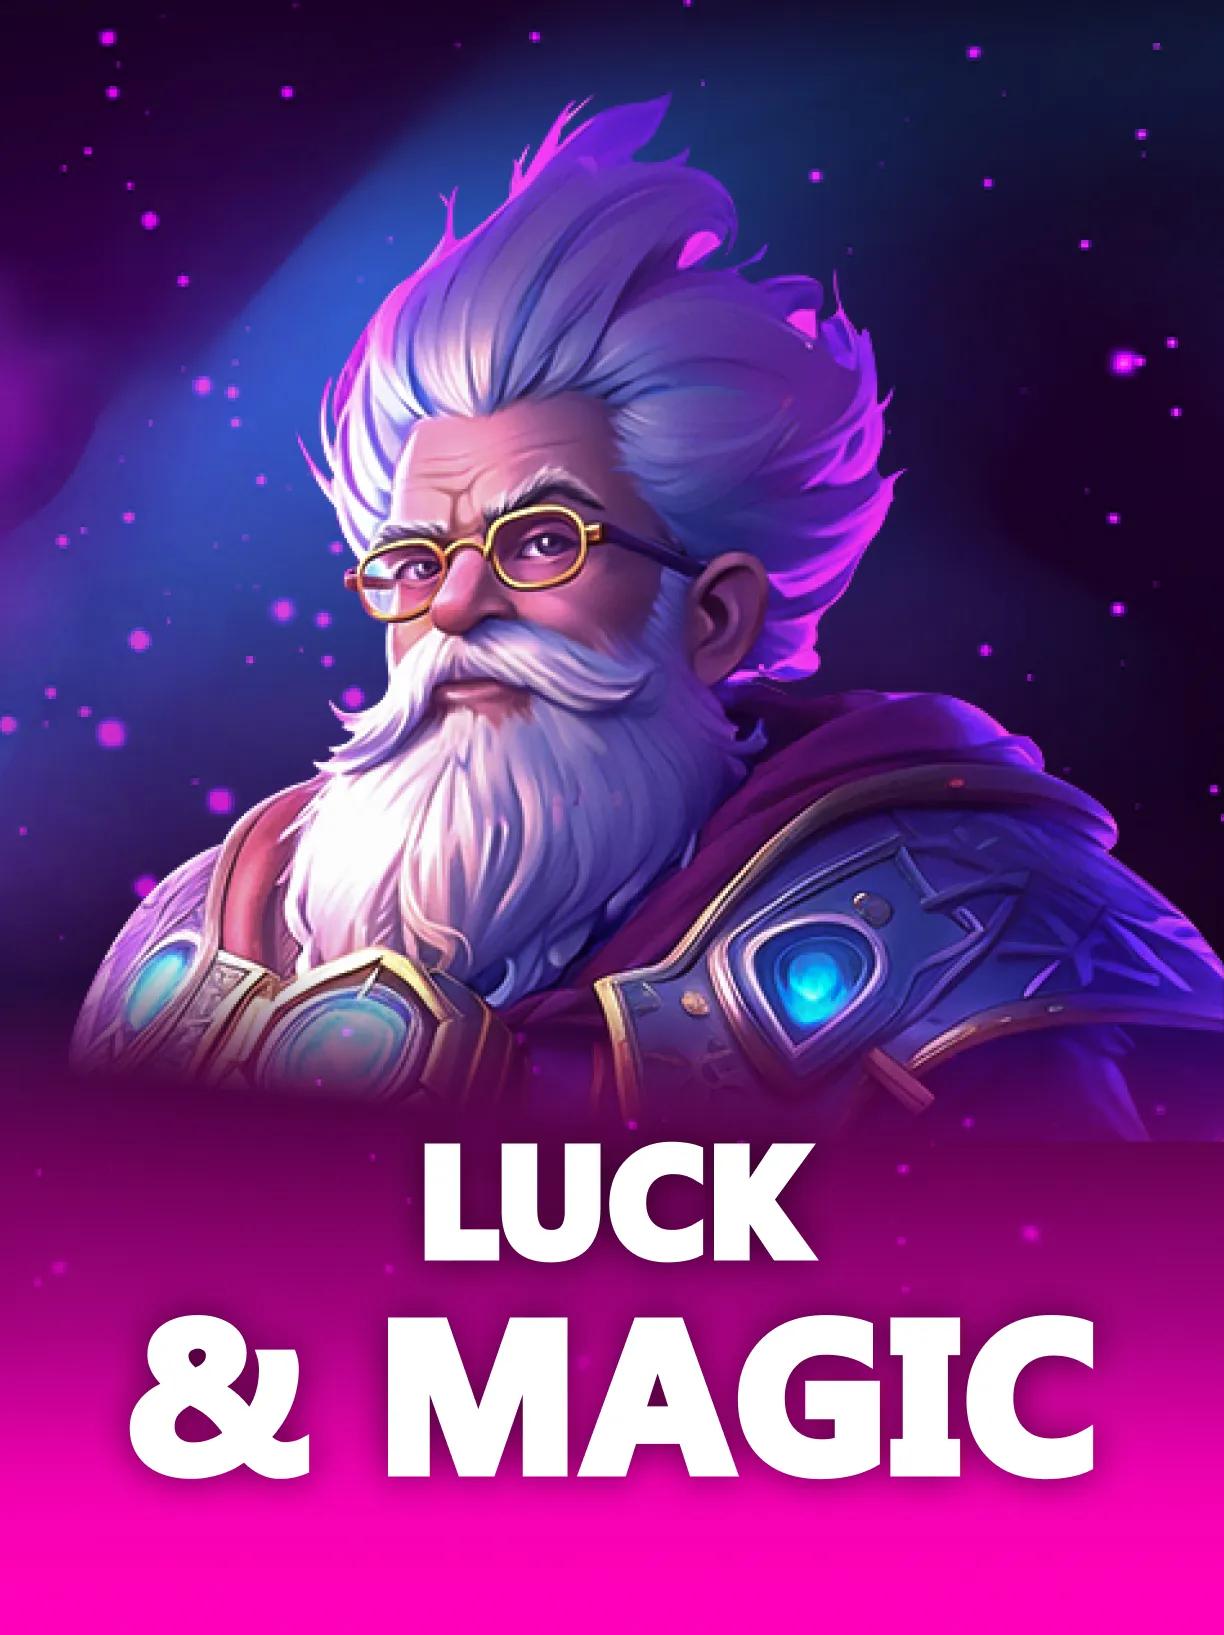 Luck_&_Magic_square.webp